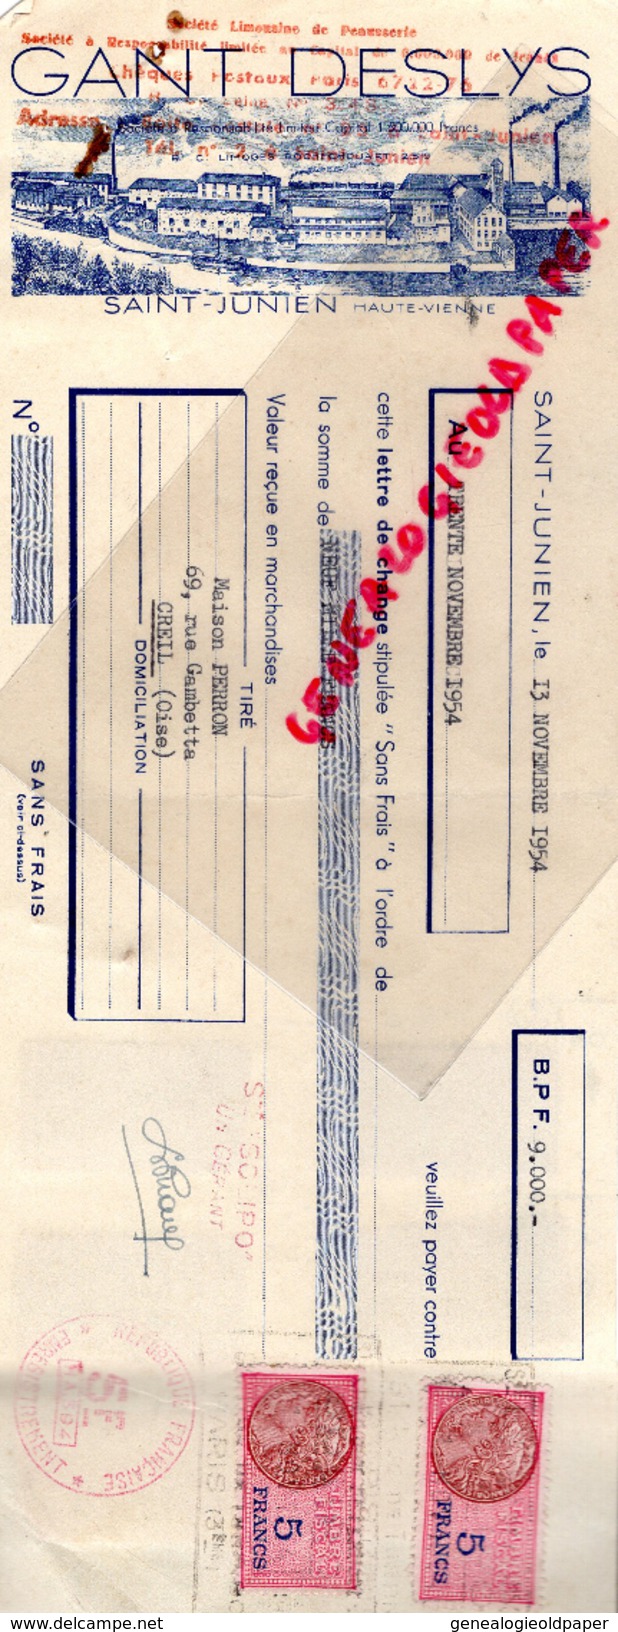 87 - ST SAINT JUNIEN - TRAITE GANTERIE GANT DESLYS- MAISON PERRON CREIL- GANTS- MEGISSERIE- 1954 MEGISSERIE - Elektriciteit En Gas